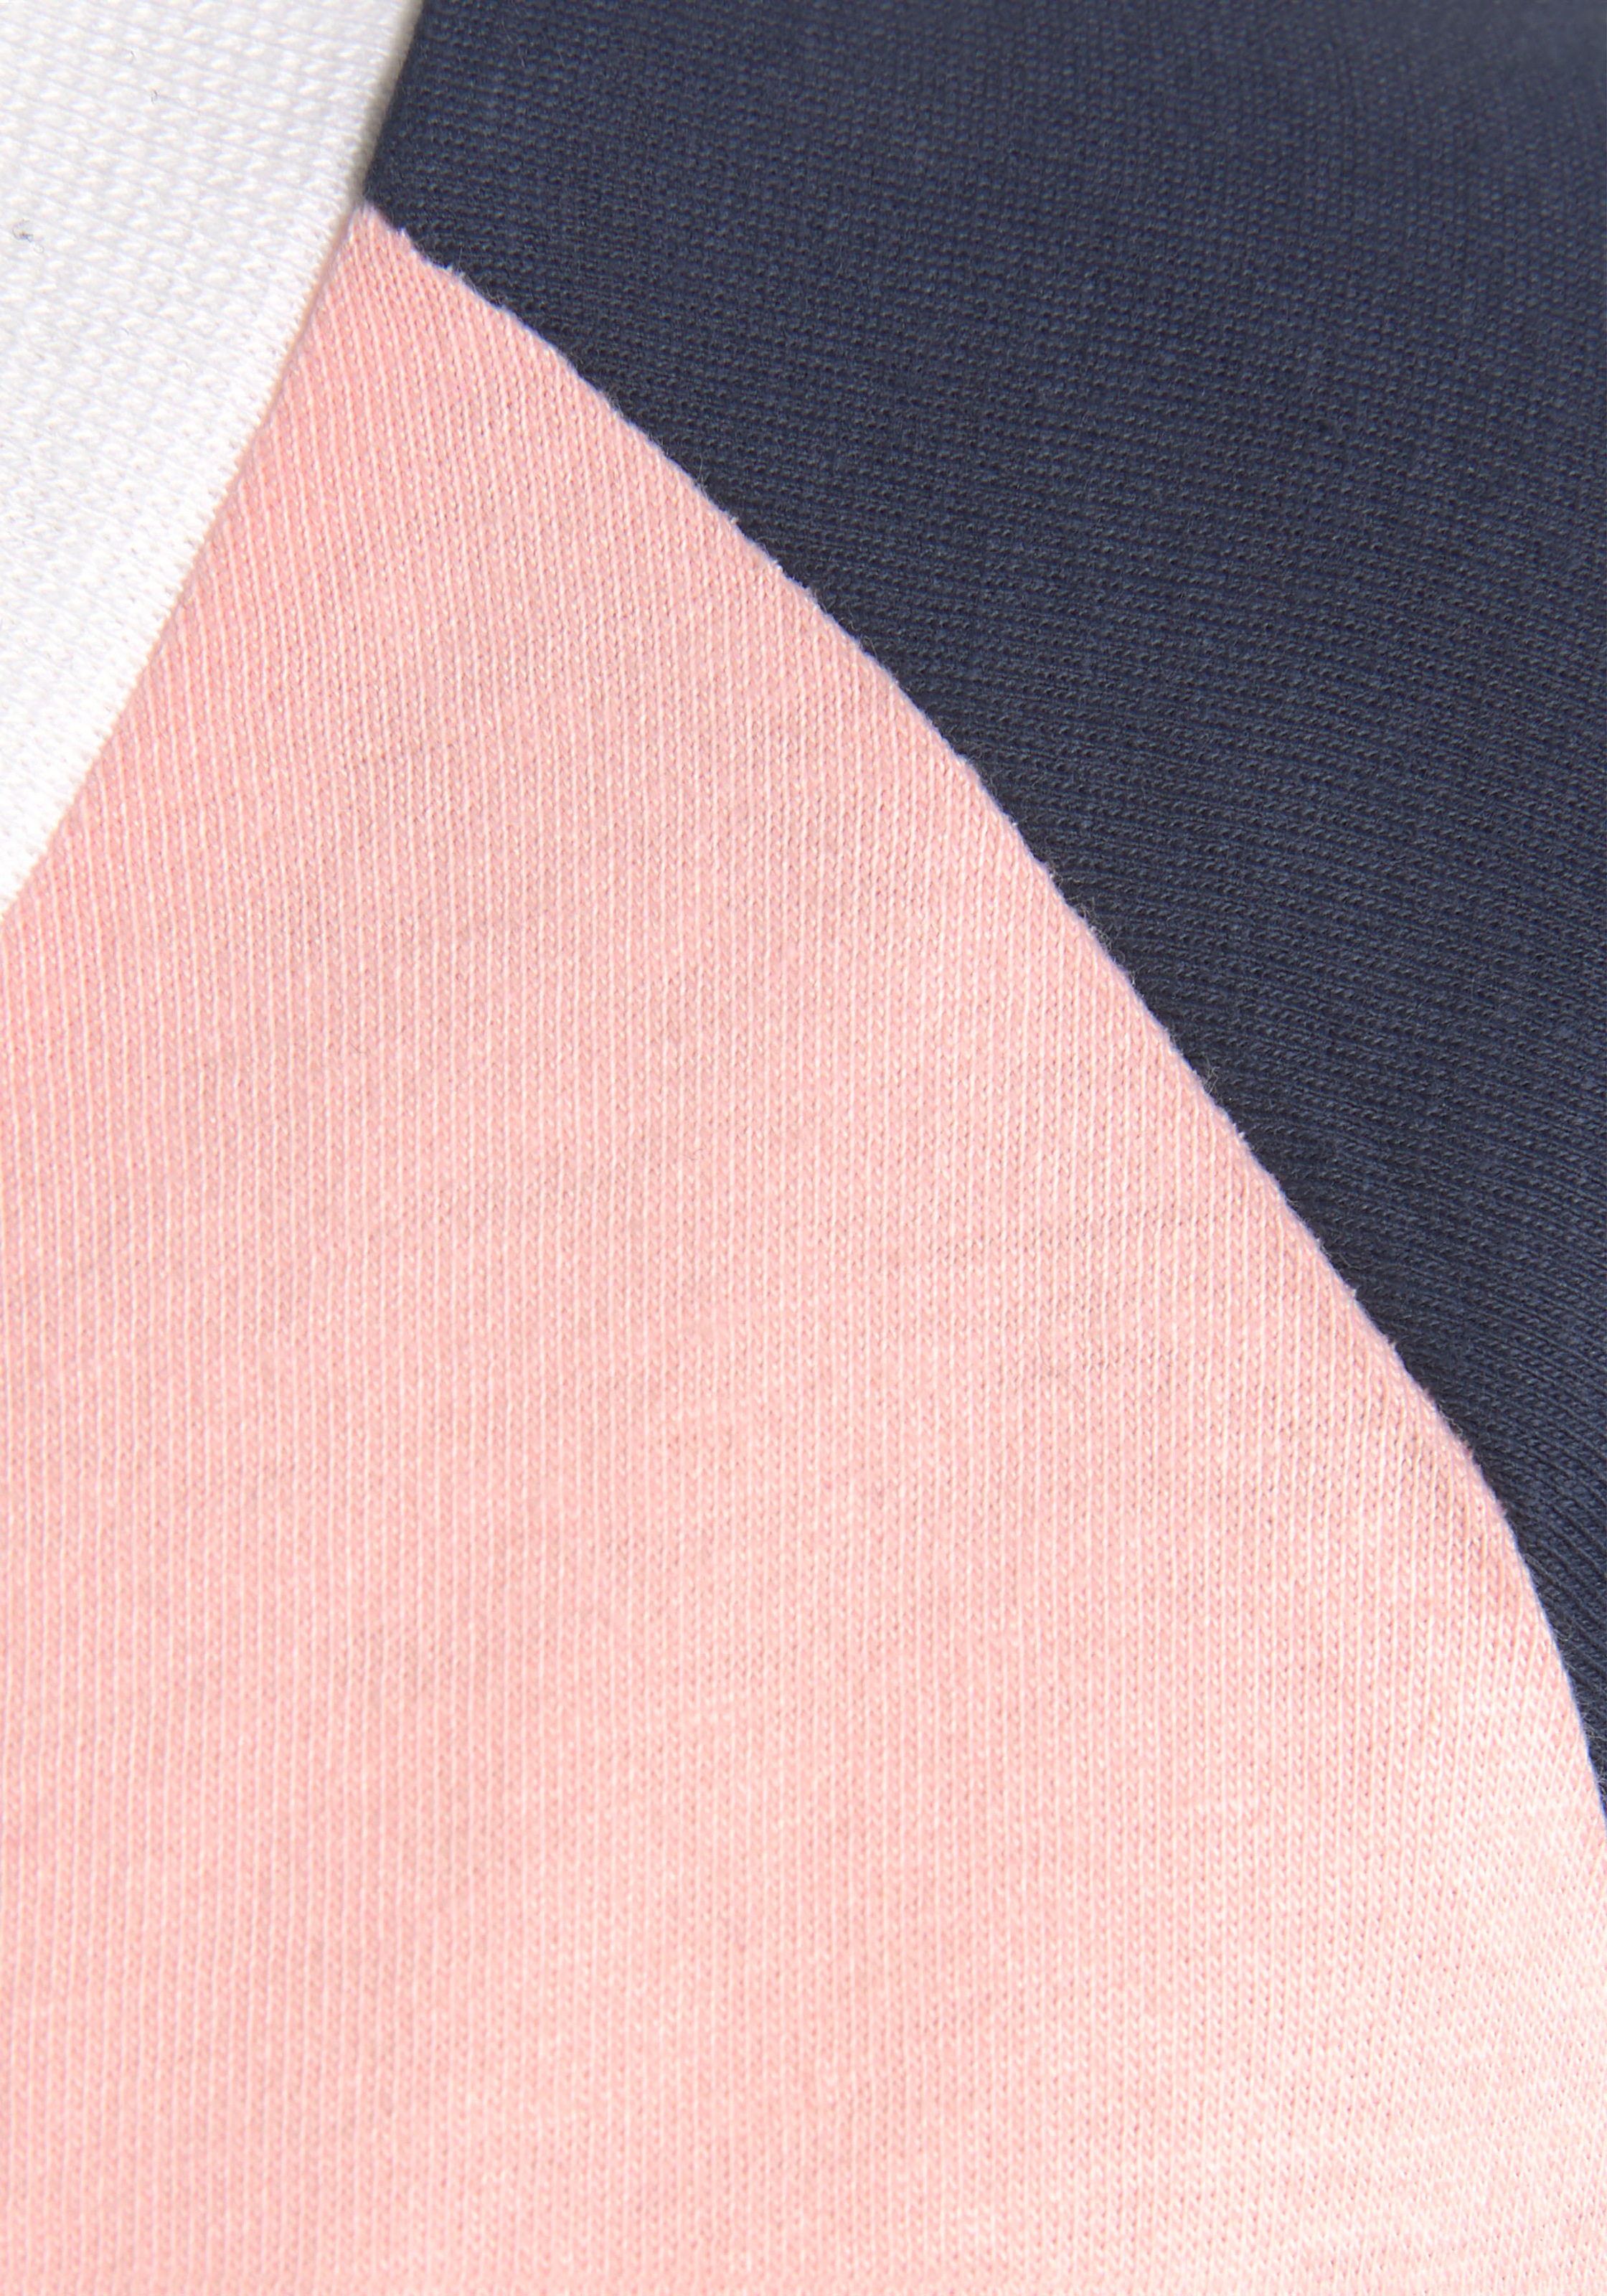 Lingerie 1 kontrastfarbenen Pyjama, | mit Bademode, Stück), (2 online kaufen tlg., » Unterwäsche Raglanärmeln KangaROOS & LASCANA